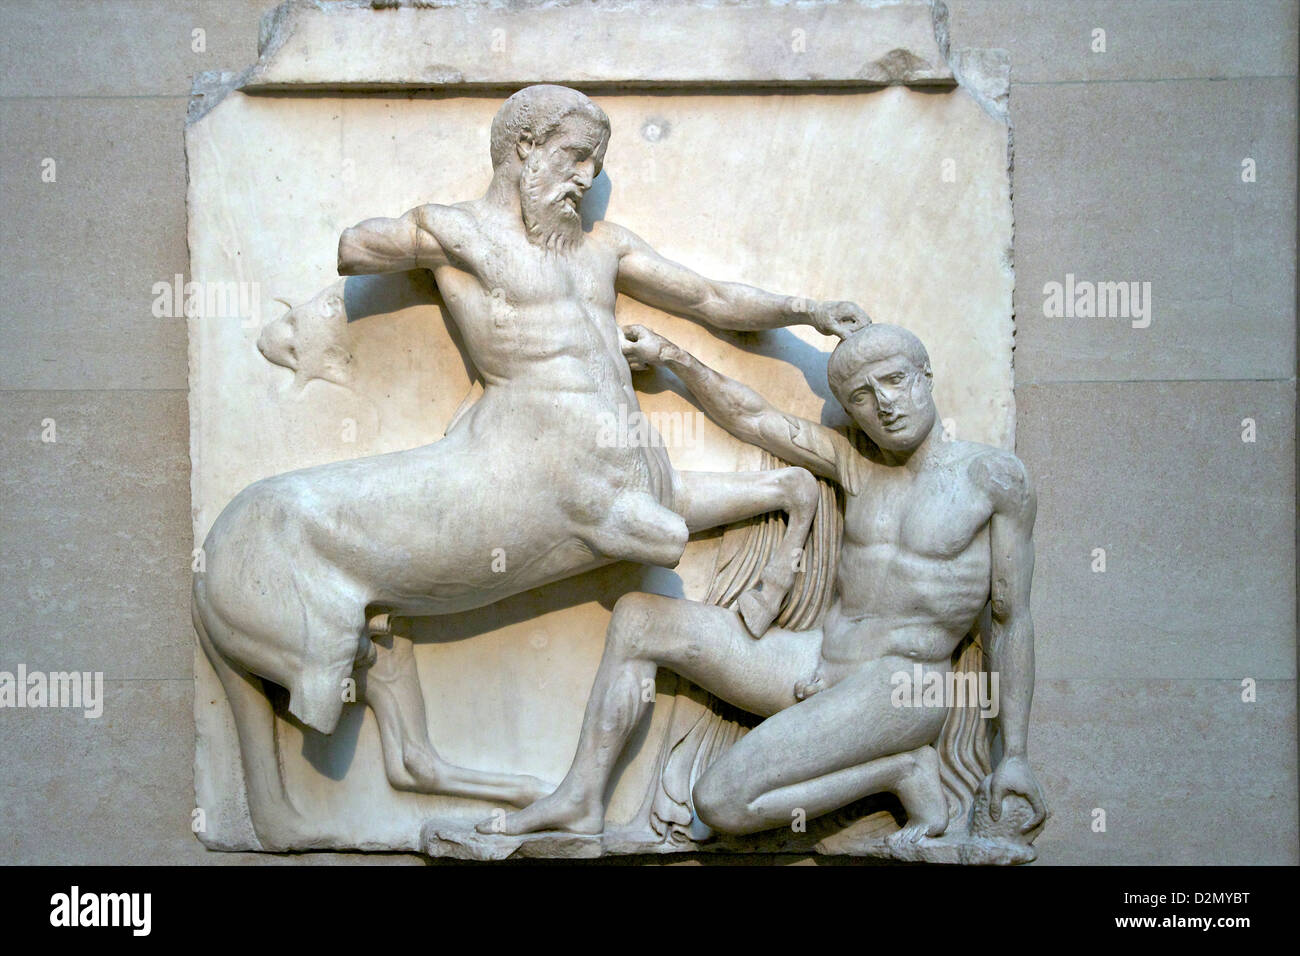 Centaur und Lapith Fighting, South Metope, Parthenon, British Museum, London, England, Großbritannien, GB, Britische Inseln Stockfoto